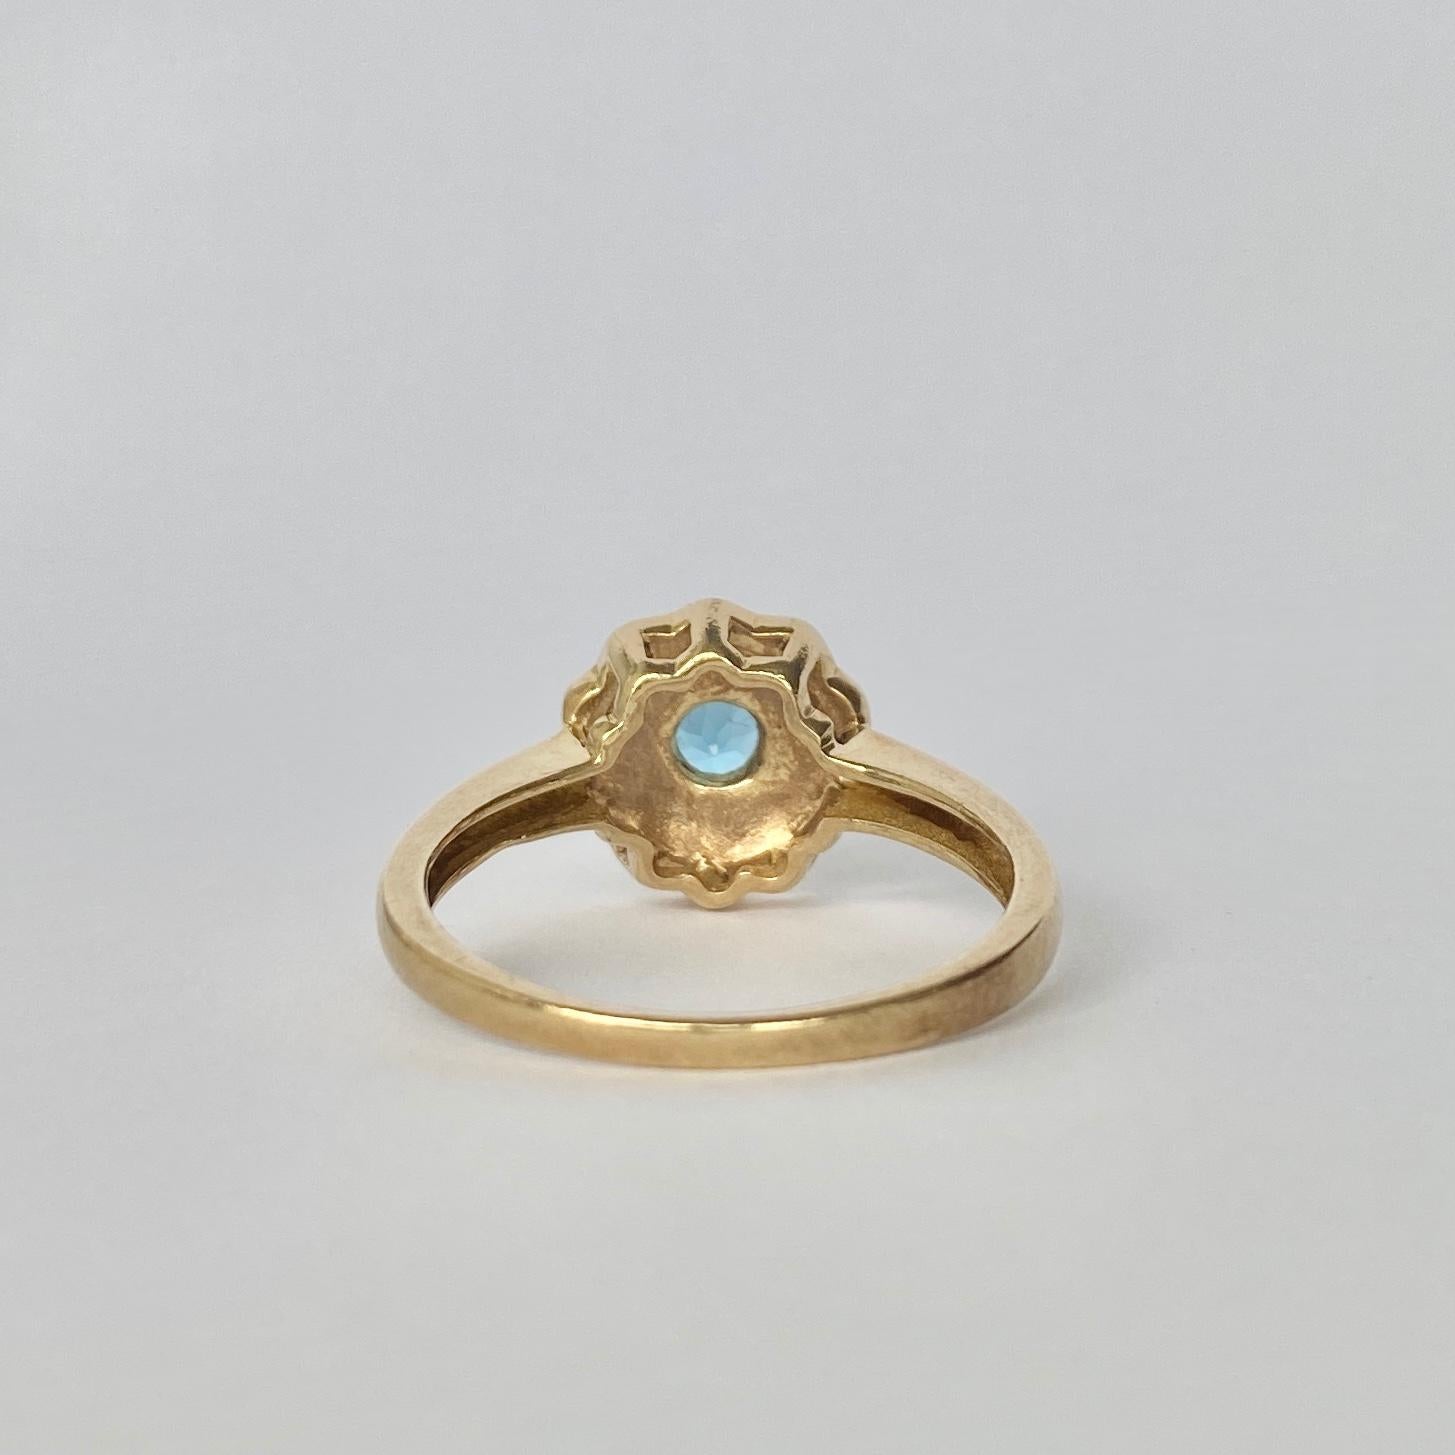 Das Blau dieses Topas ist hell und schön. Sie wird durch den hellen Schimmer der Perlen, die sie umgeben, vervollständigt. Der Ring ist aus 9-karätigem Gold modelliert. 

Ringgröße: Q oder 8 1/4 
Cluster-Durchmesser: 10,5 mm

Gewicht: 3,4 g